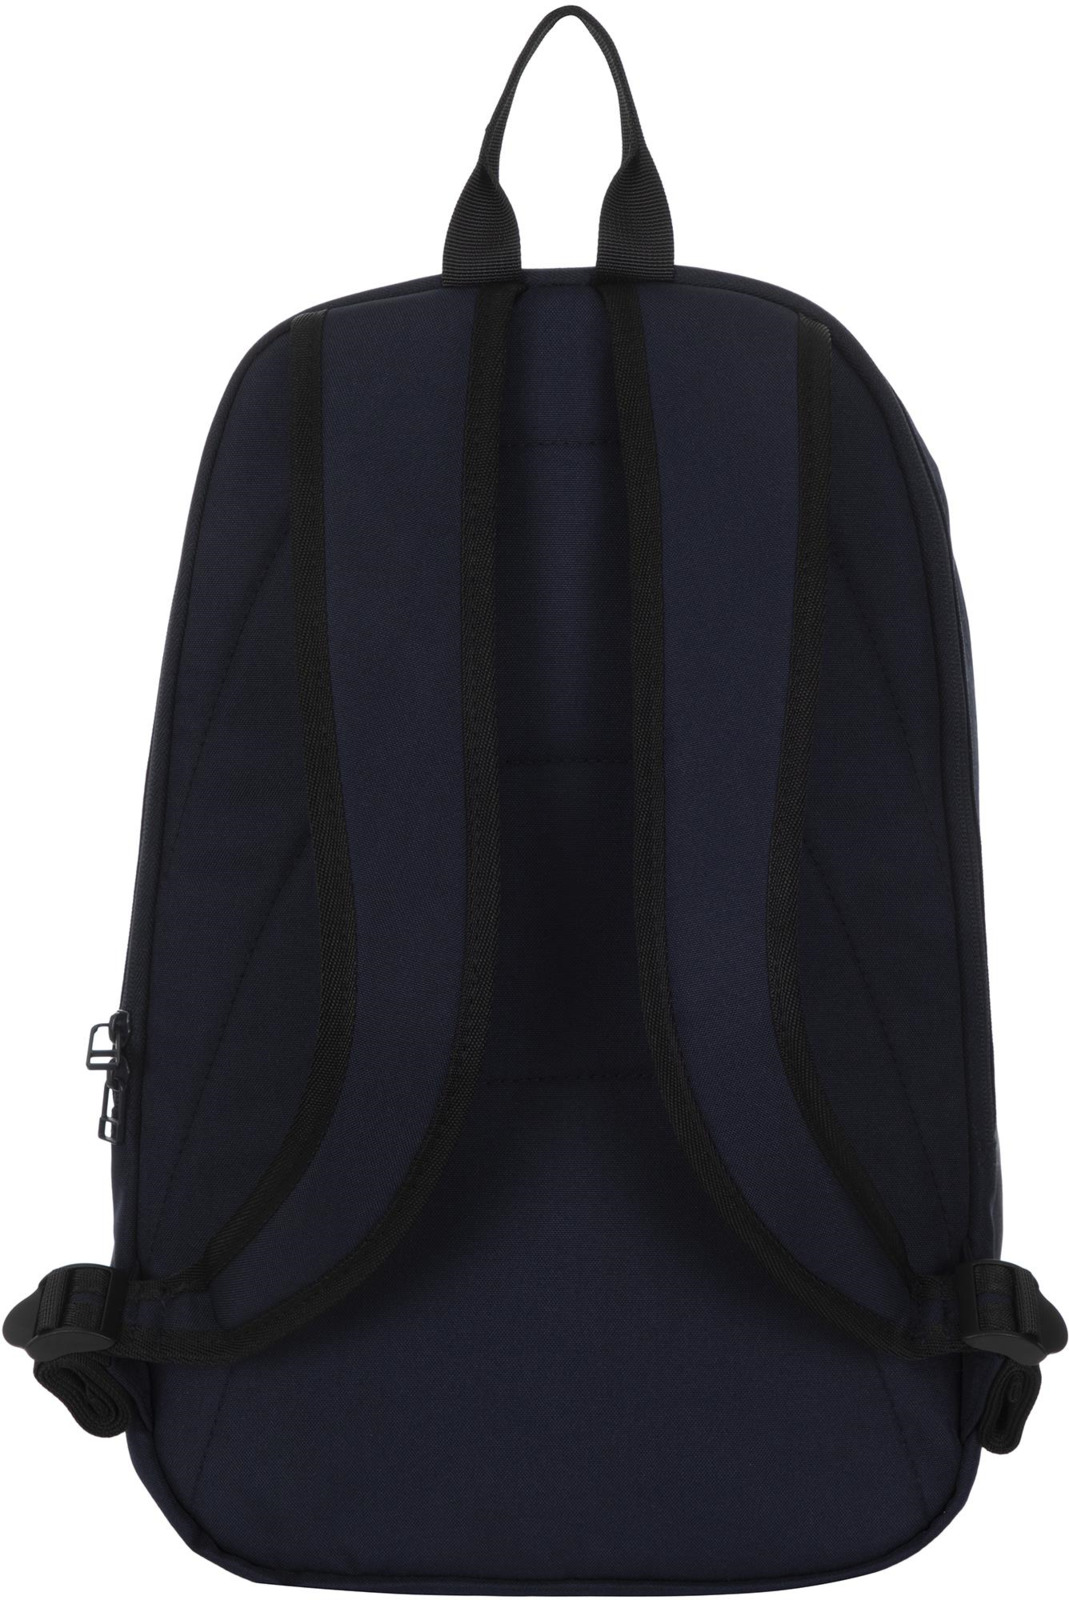 фото Рюкзак Fila Adult Backpack, S19AFLRSU01-Z4, 20 л, темно-синий